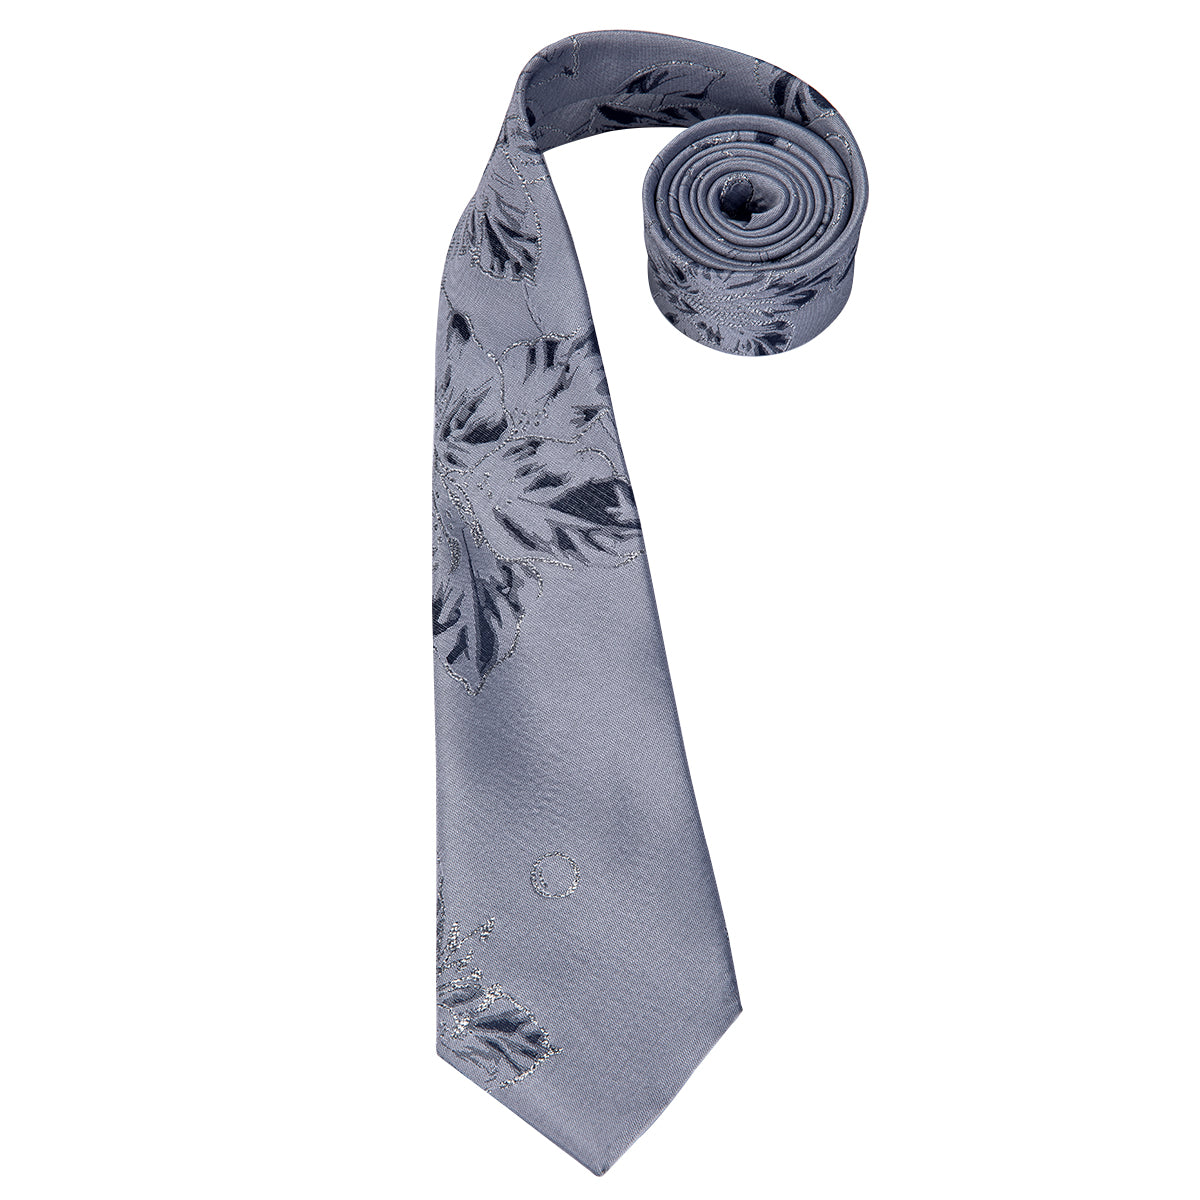 Light Grey Silver Necktie Floral Tie Pocket Square Cufflinks Set